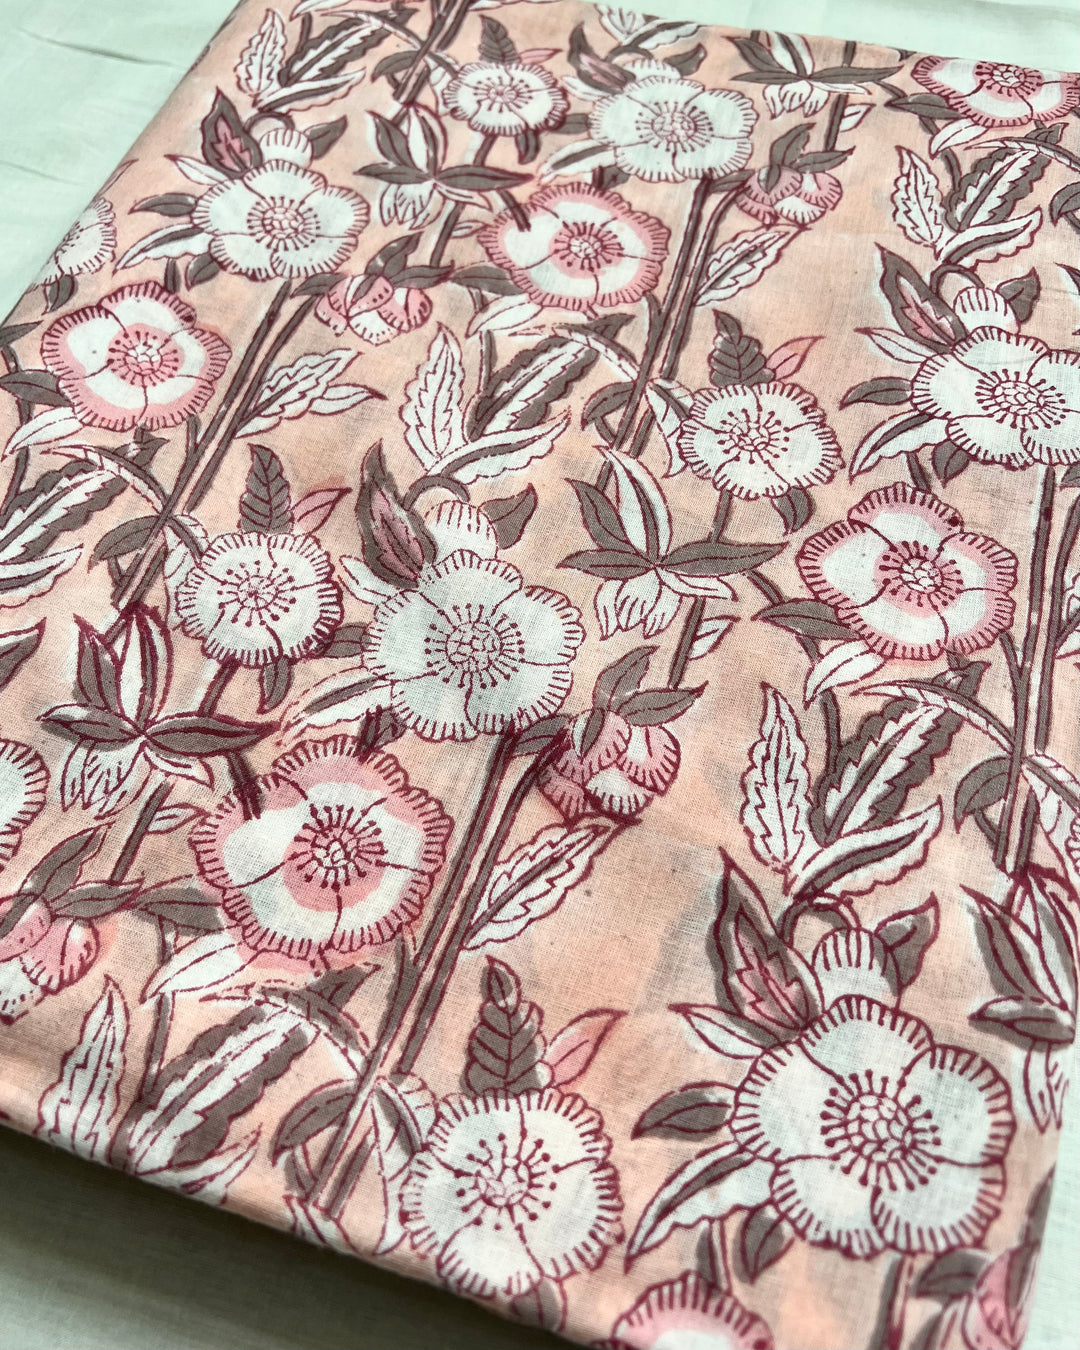 Salmon Pink Poppy Block Print Cotton Fabric